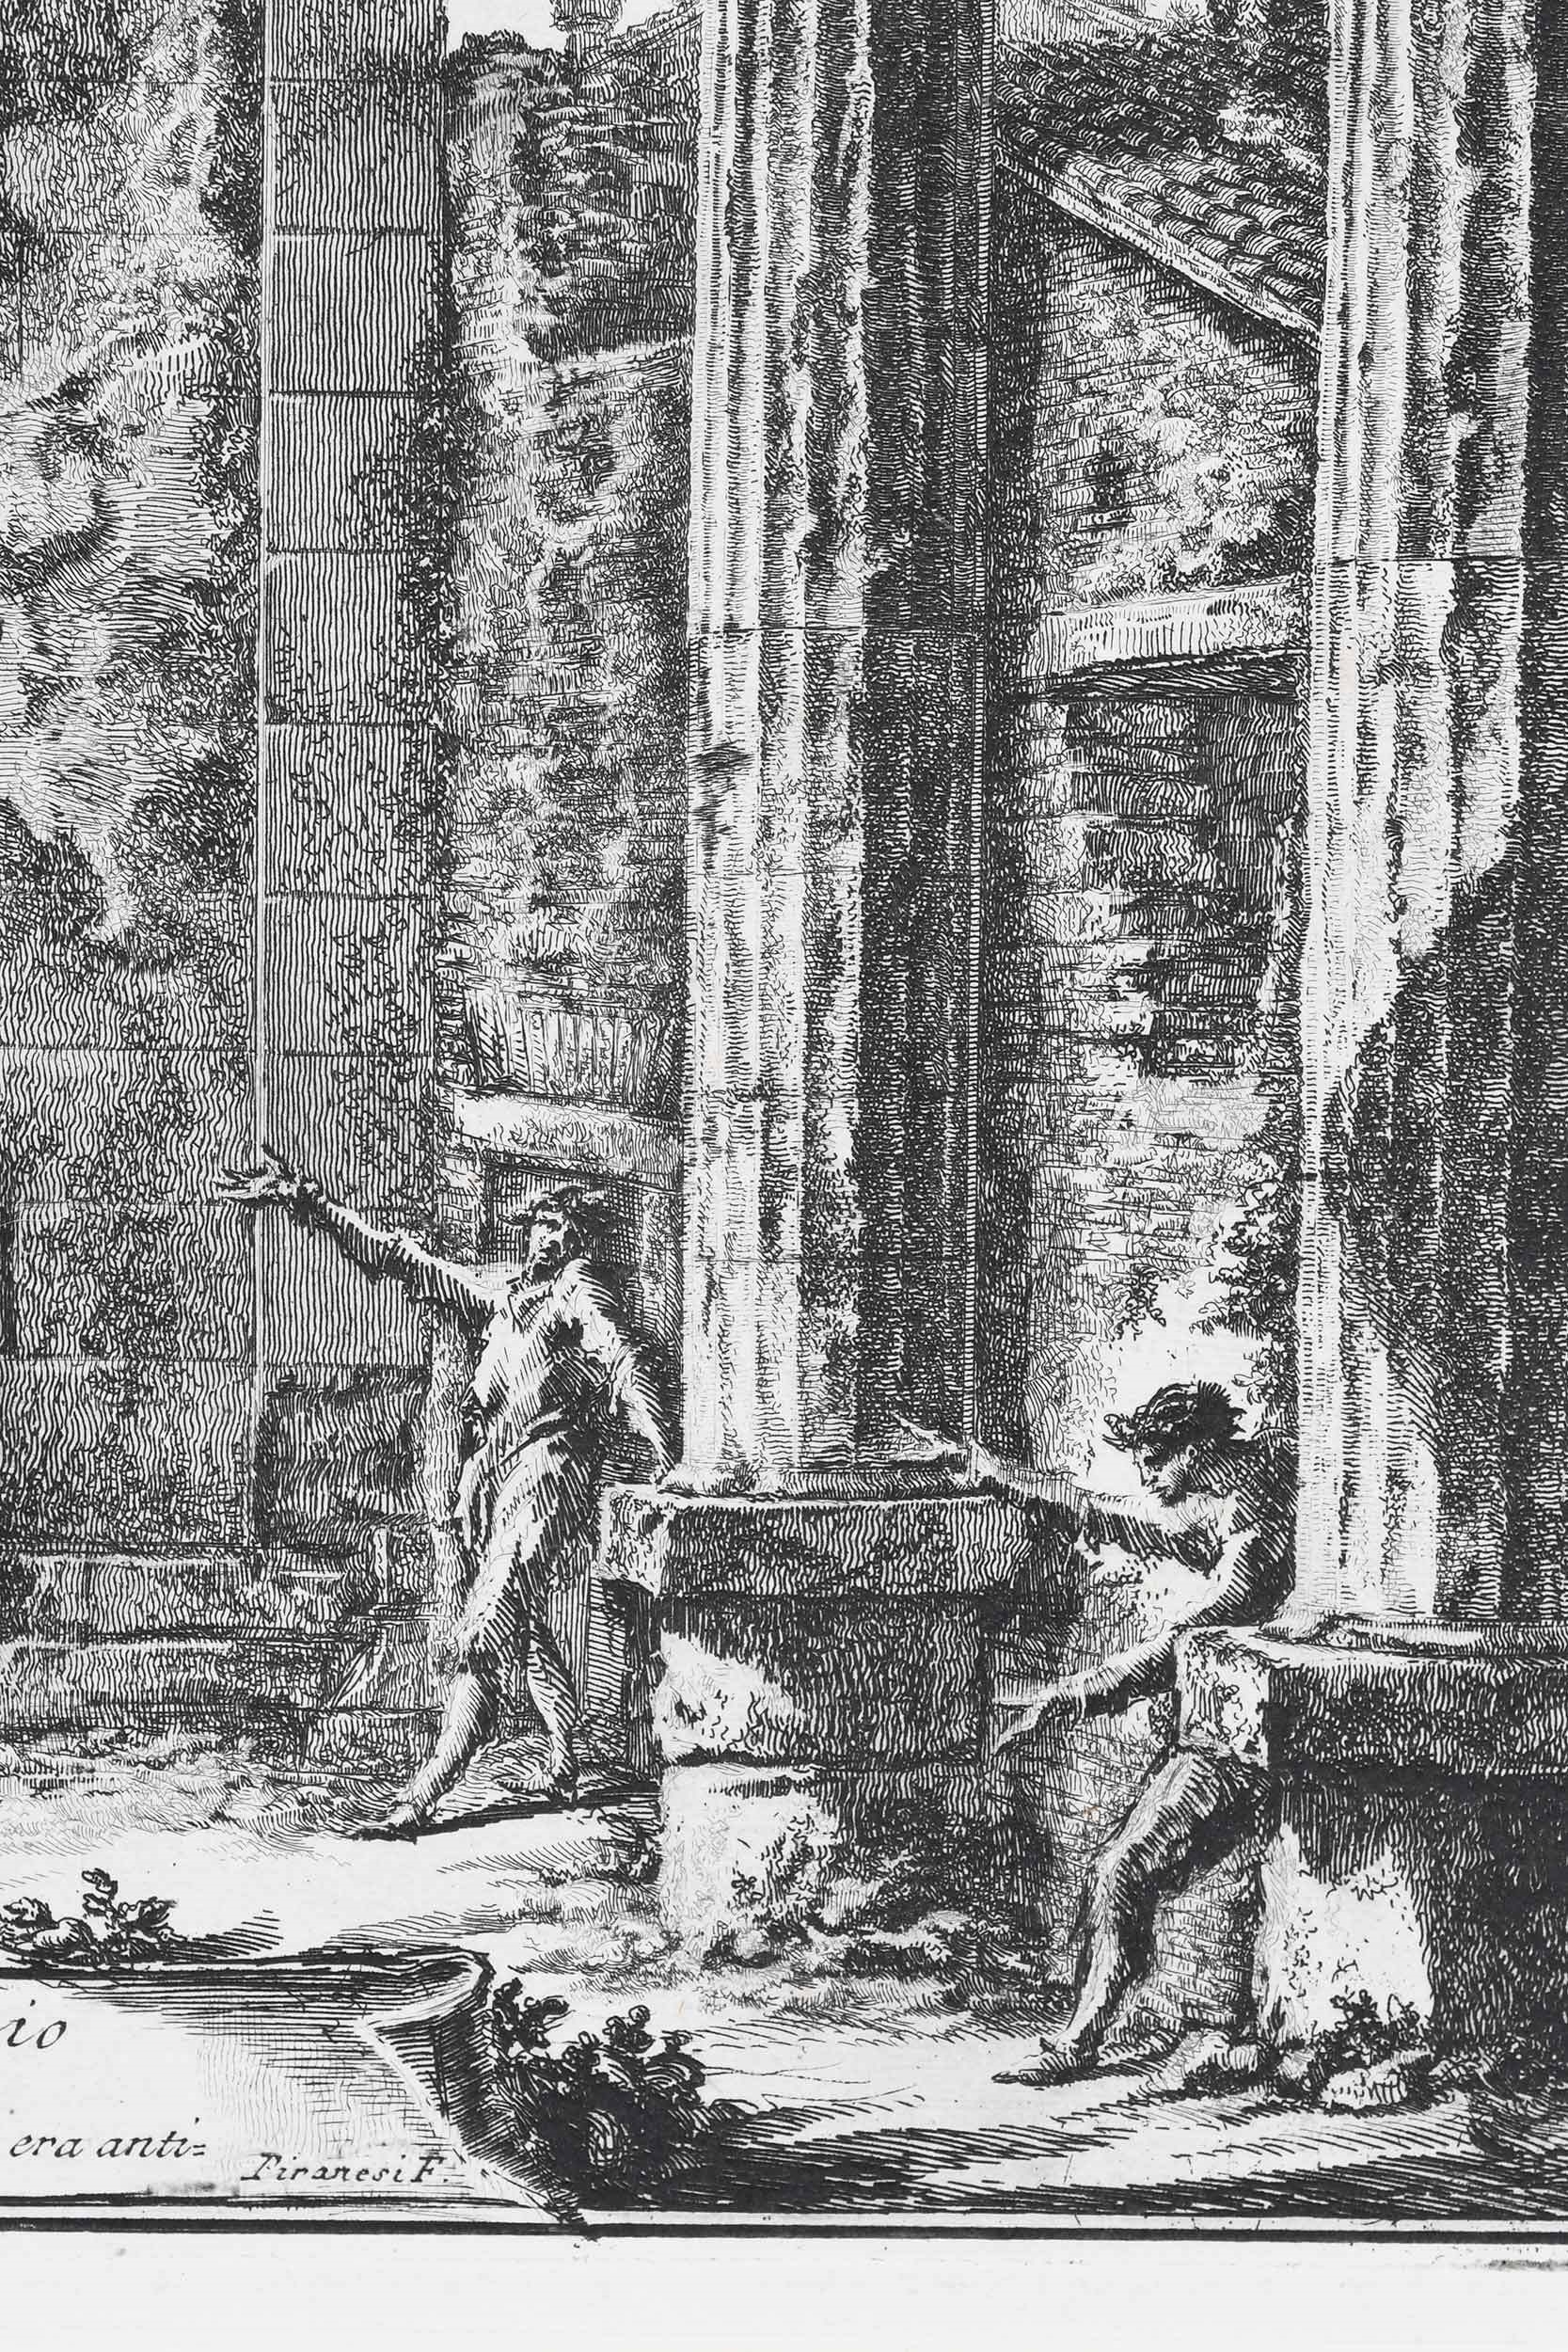 Artwork by Giovanni Battista Piranesi, Veduta del presente stato dell'interno del Pronao del tempio d'Ercole nella citta di Cora, Made of etching on laid paper